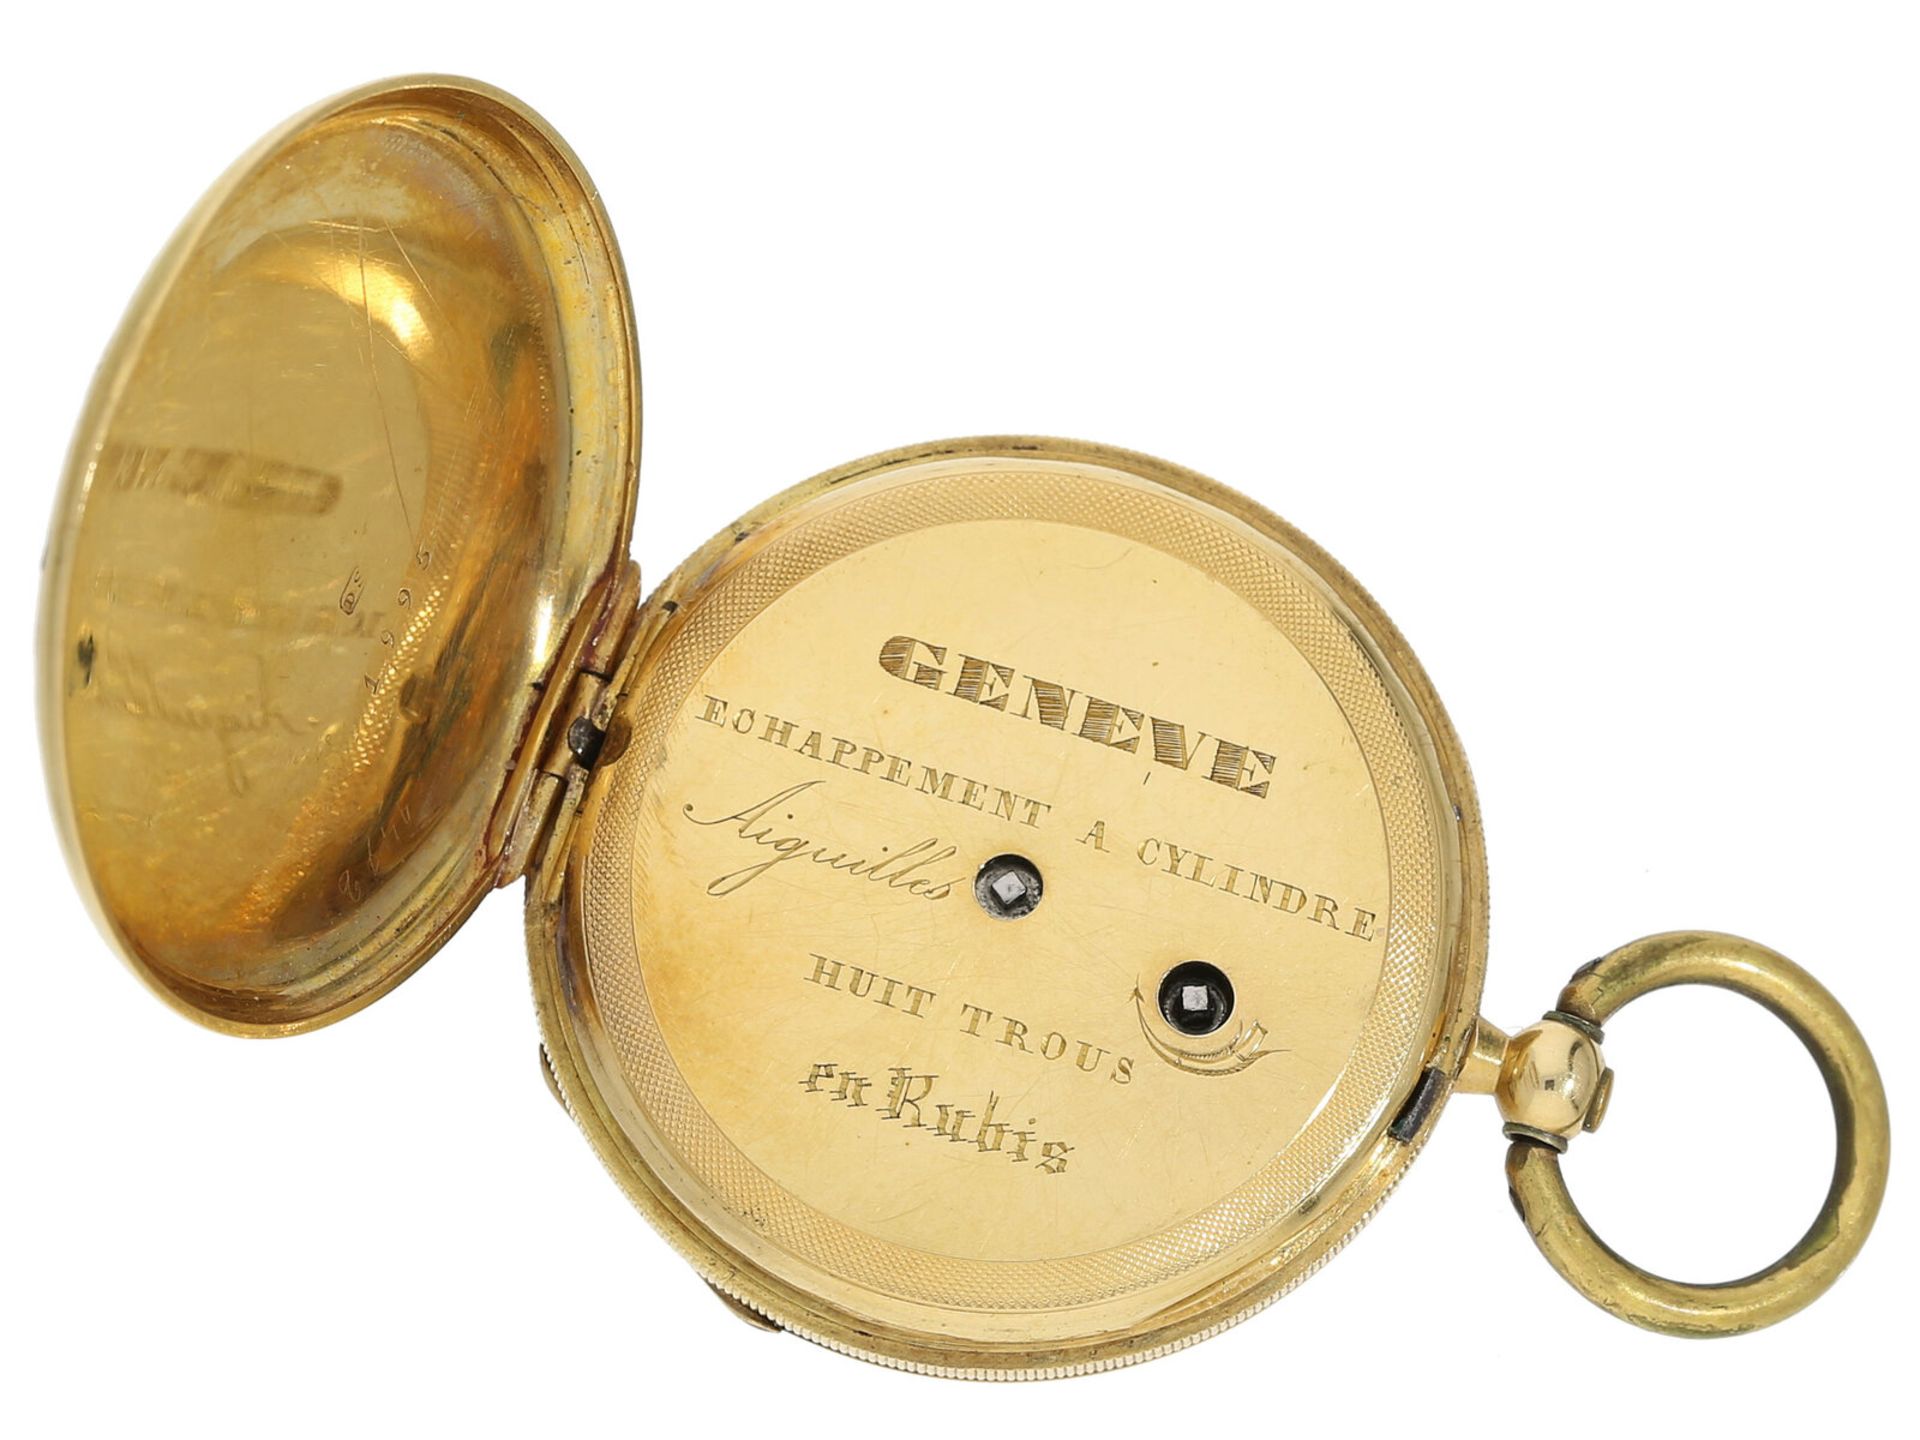 Taschenuhr: Gold/Emaille-Lepine von feiner Qualität, Genf um 1850 - Bild 3 aus 4